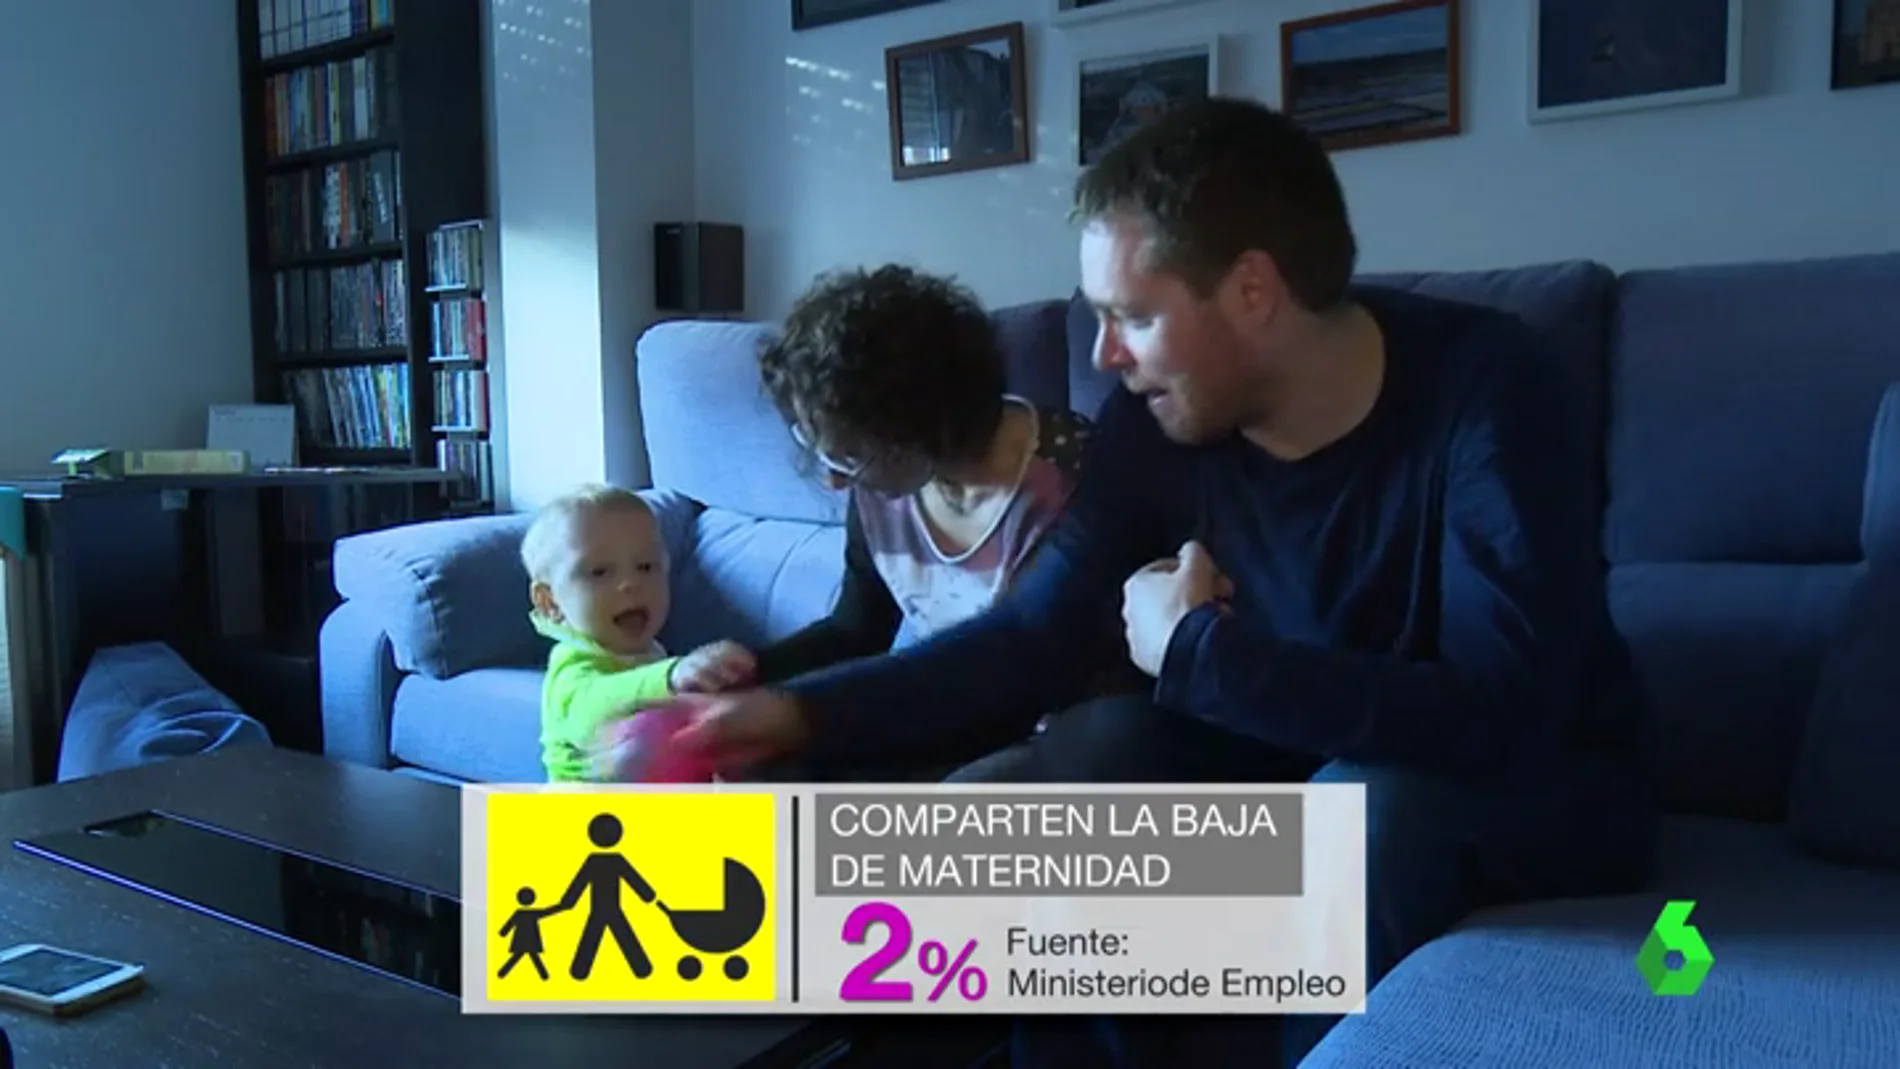 Conciliación familiar, la asignatura pendiente en España: solo el 2% de los hombres comparte la parte transferible de la maja maternal